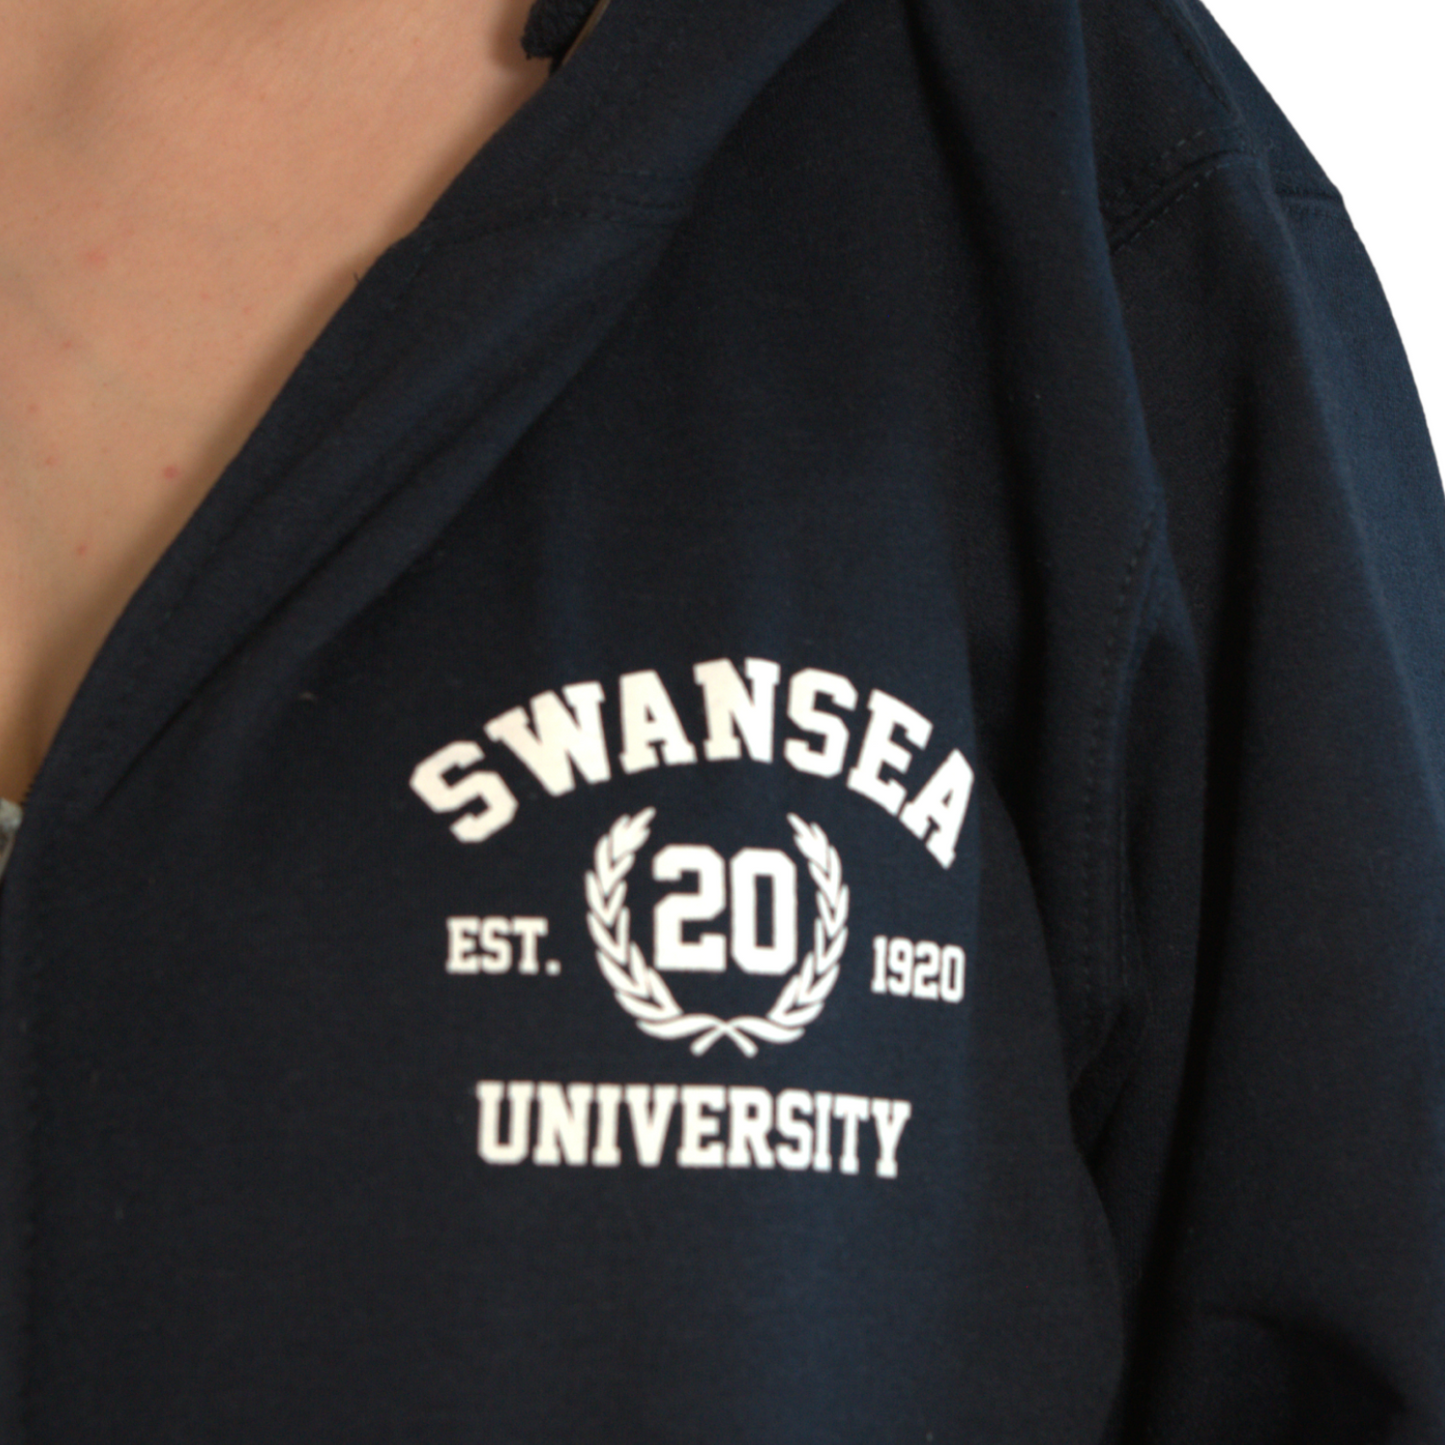 Swansea University Hoodie - Zipped